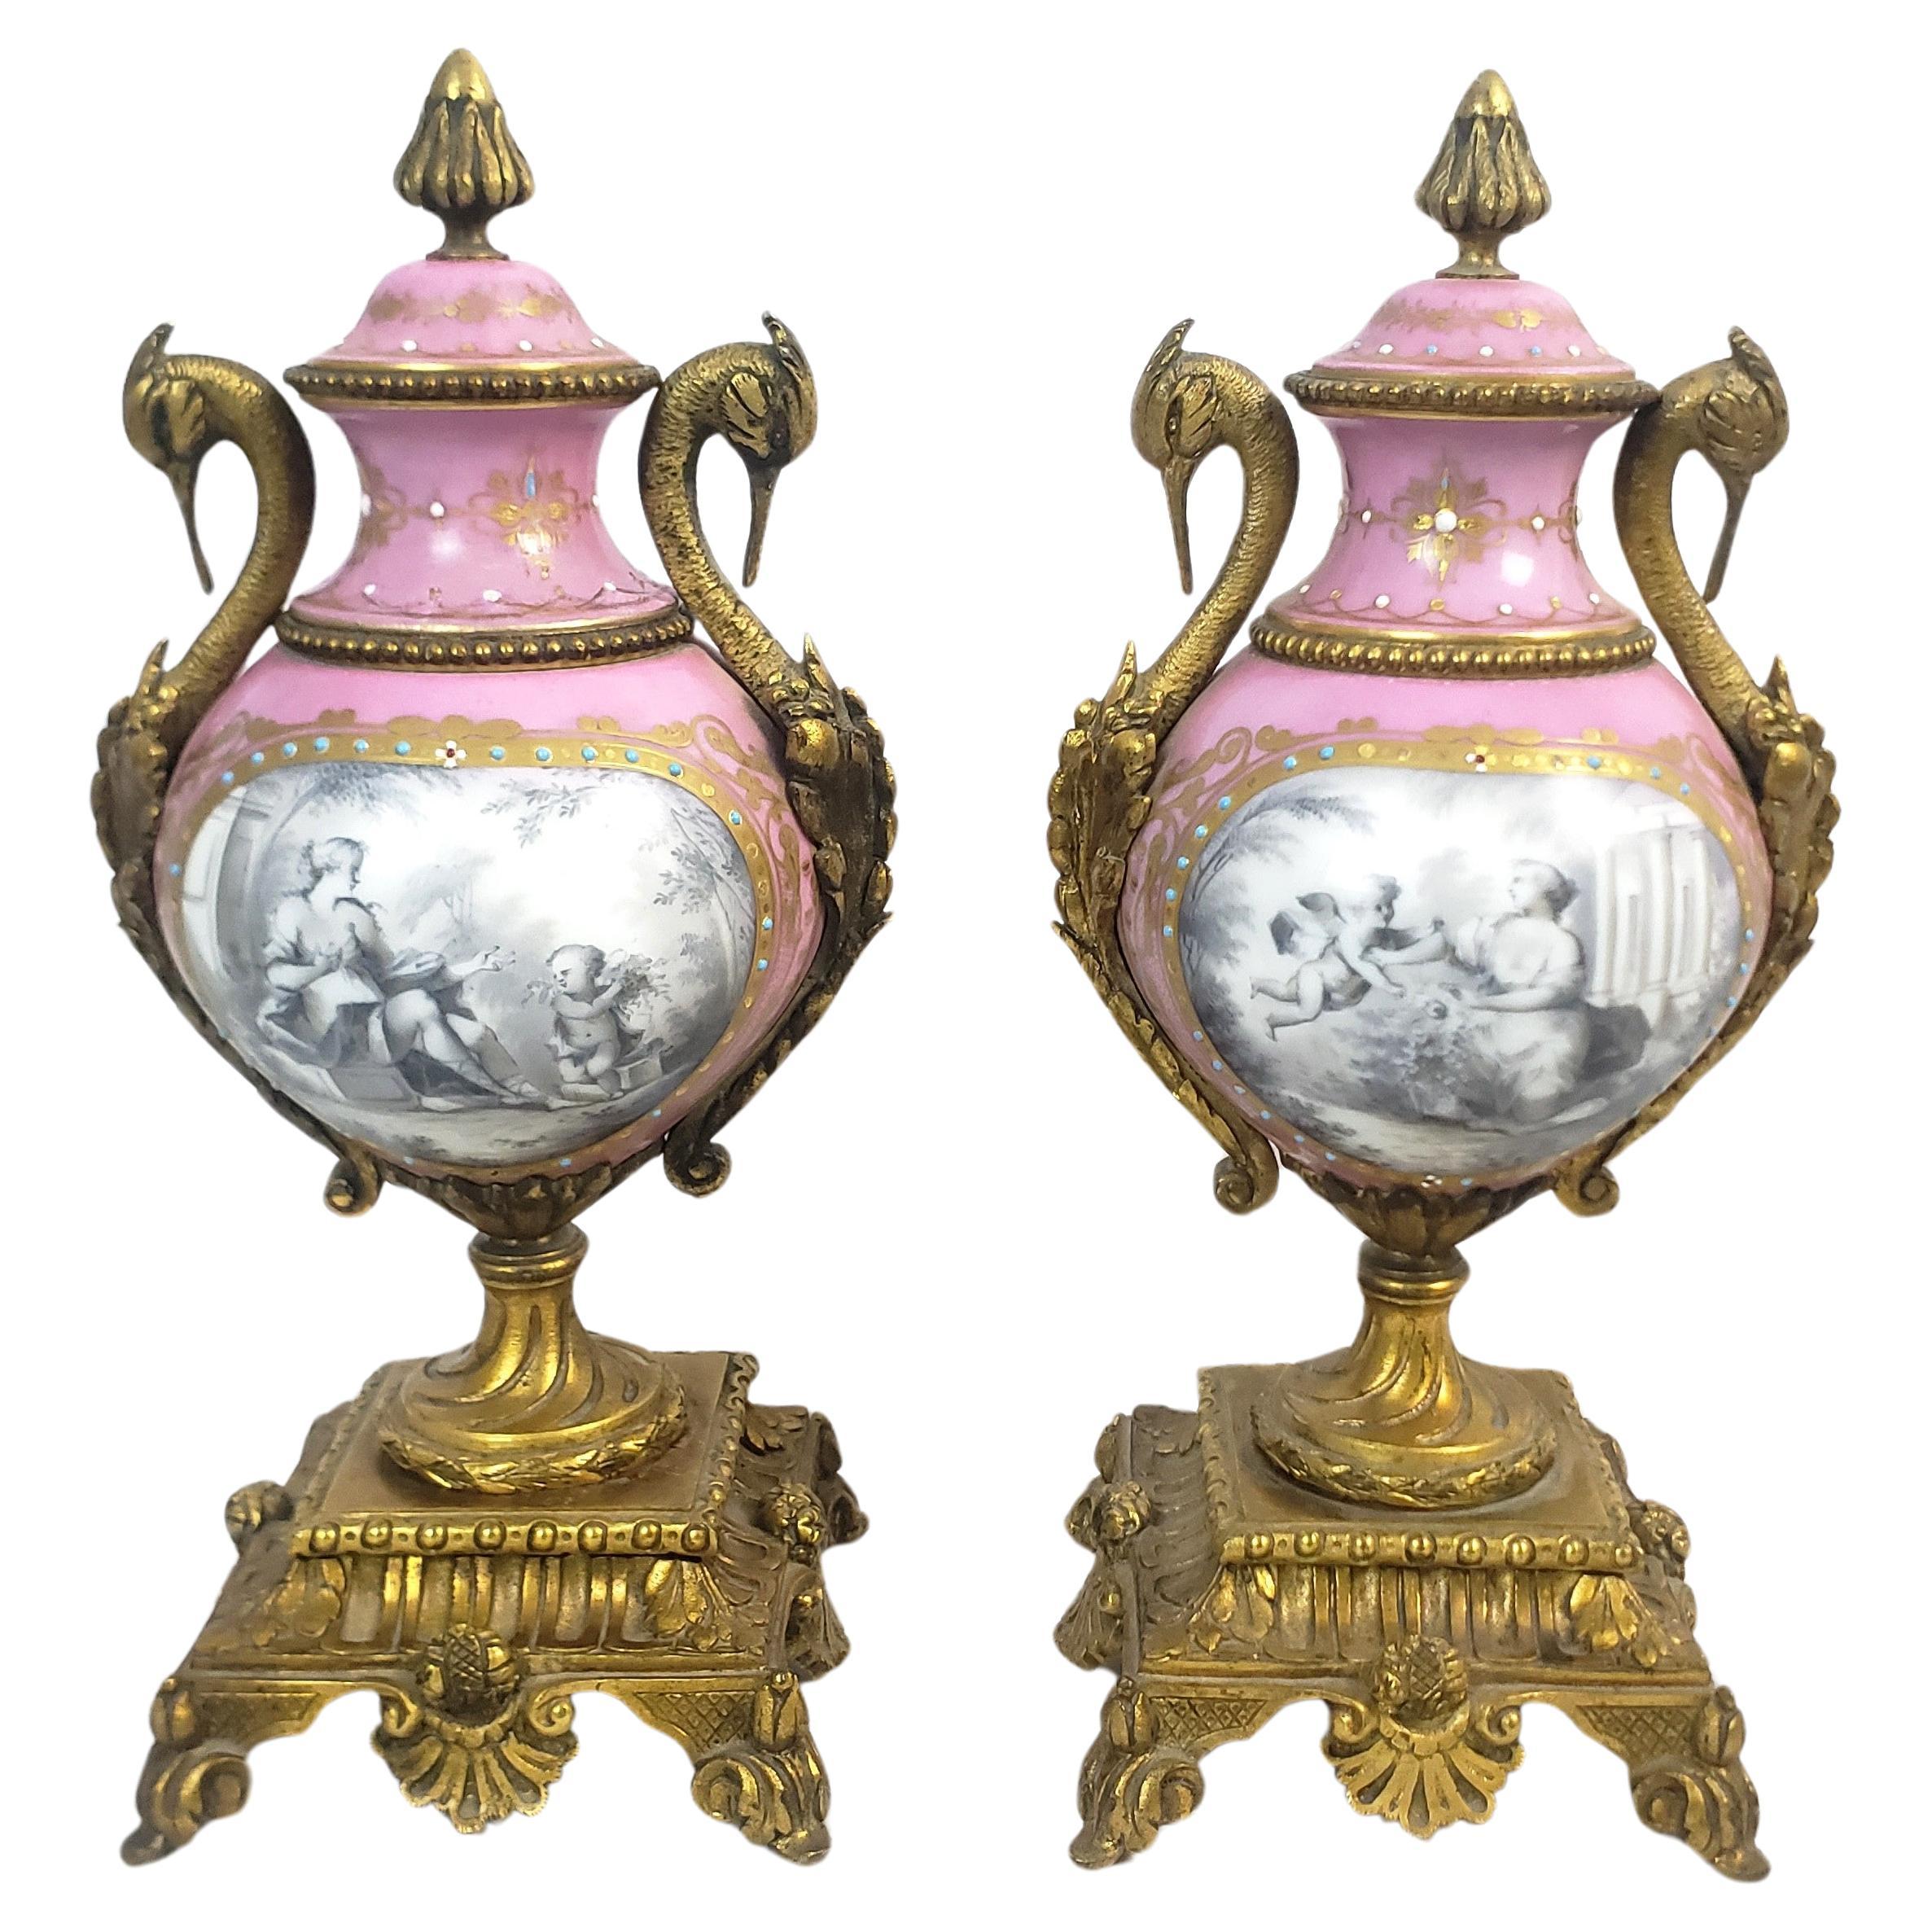 Pair of Antique Sevres Styled Porcelain & Ornate Gilt Bronze Garnitures